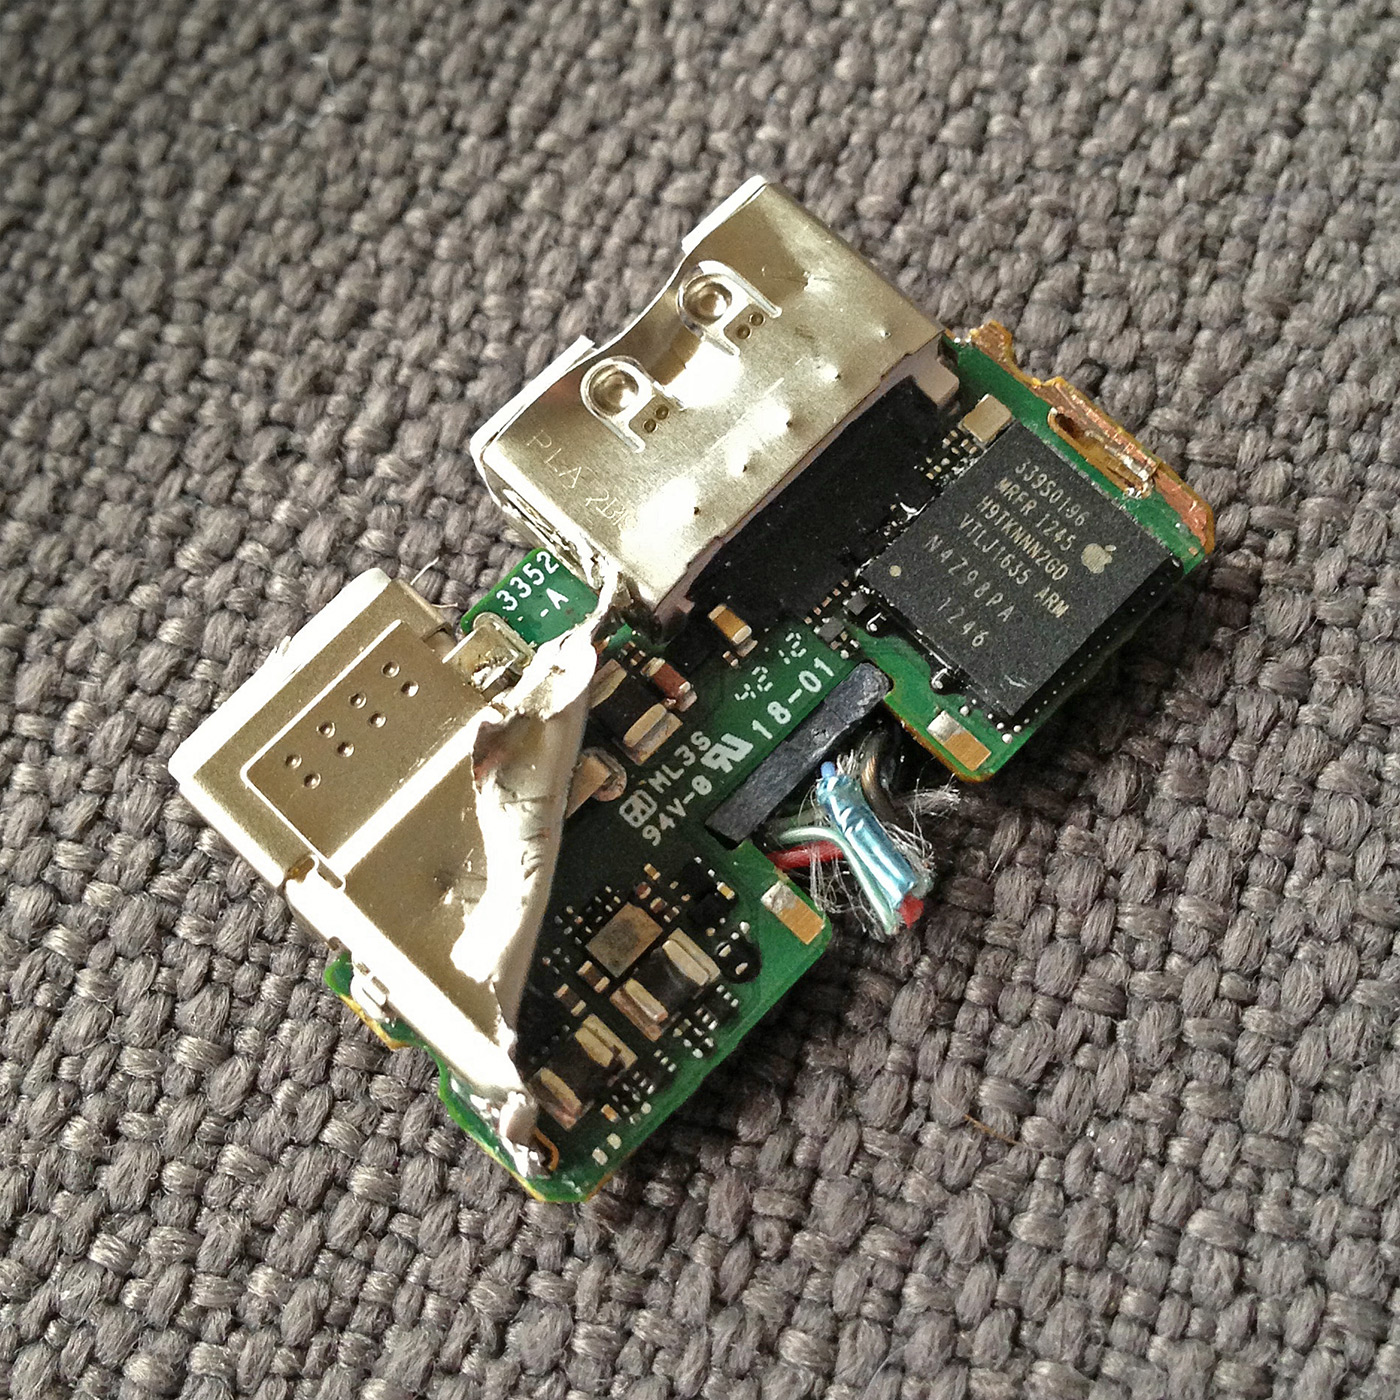 Udtale forstørrelse Mockingbird Panic Blog » The Lightning Digital AV Adapter Surprise